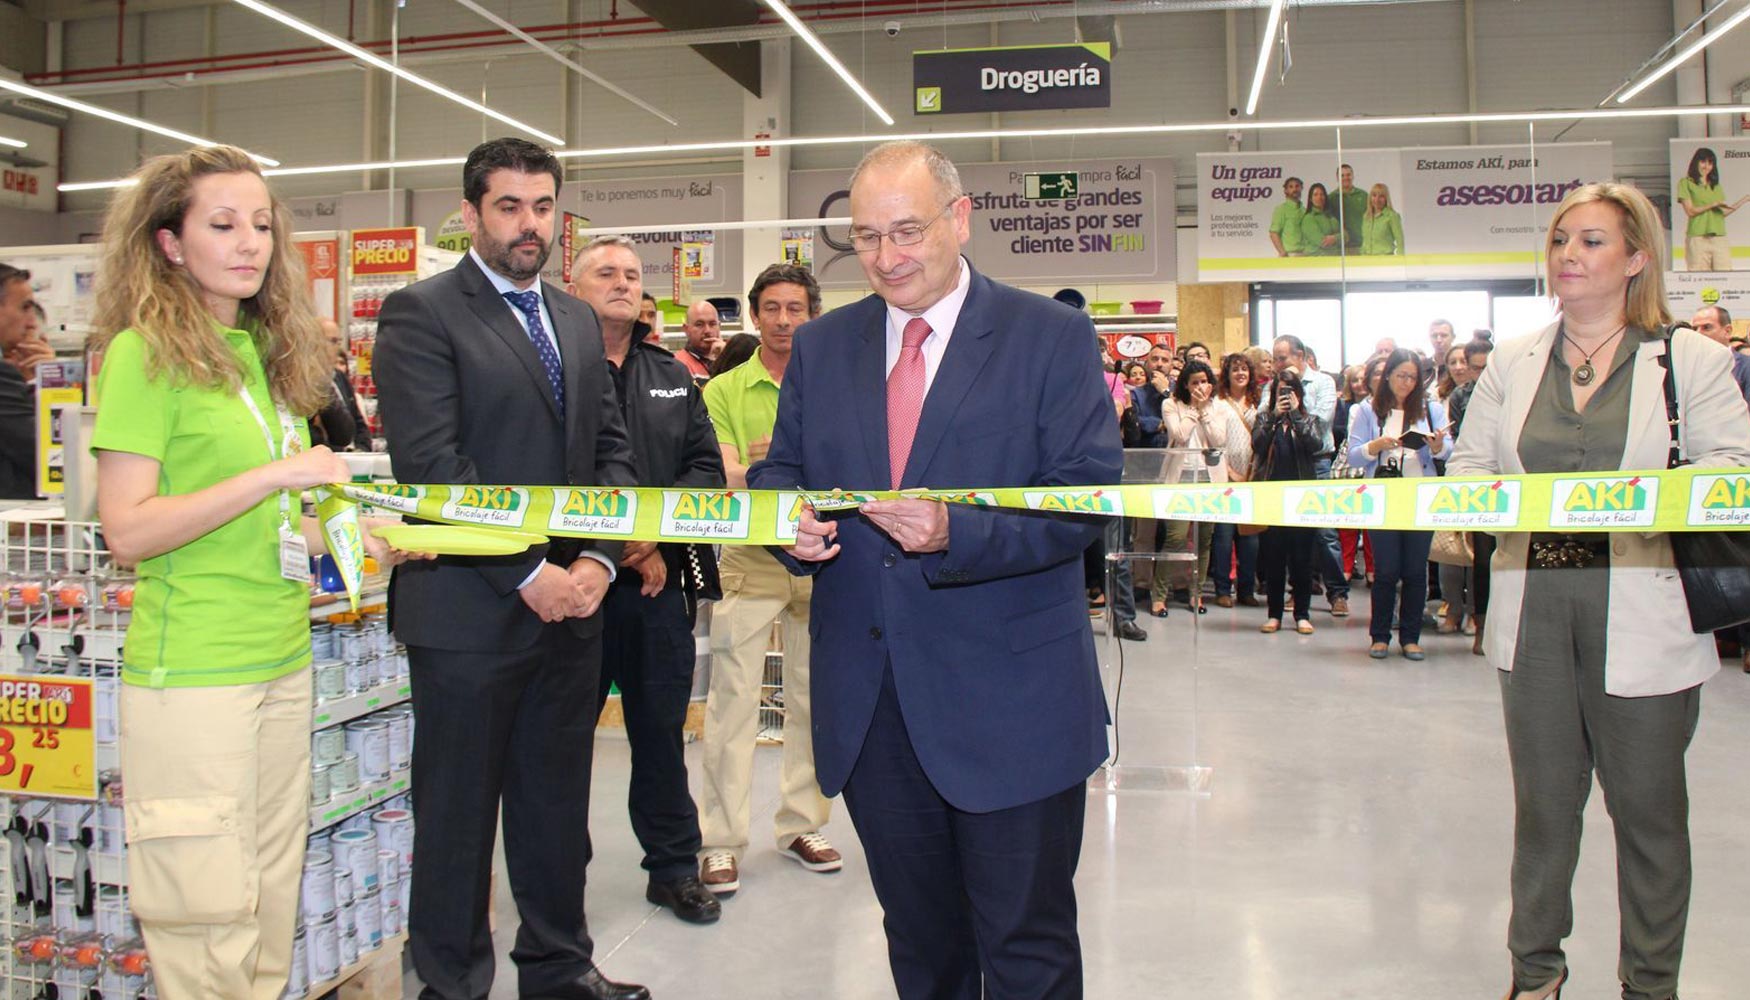 Luis Martnez Hervs, alcalde de Parla, fue el encargado de cortar la cinta que inauguraba la tienda Ak Parla